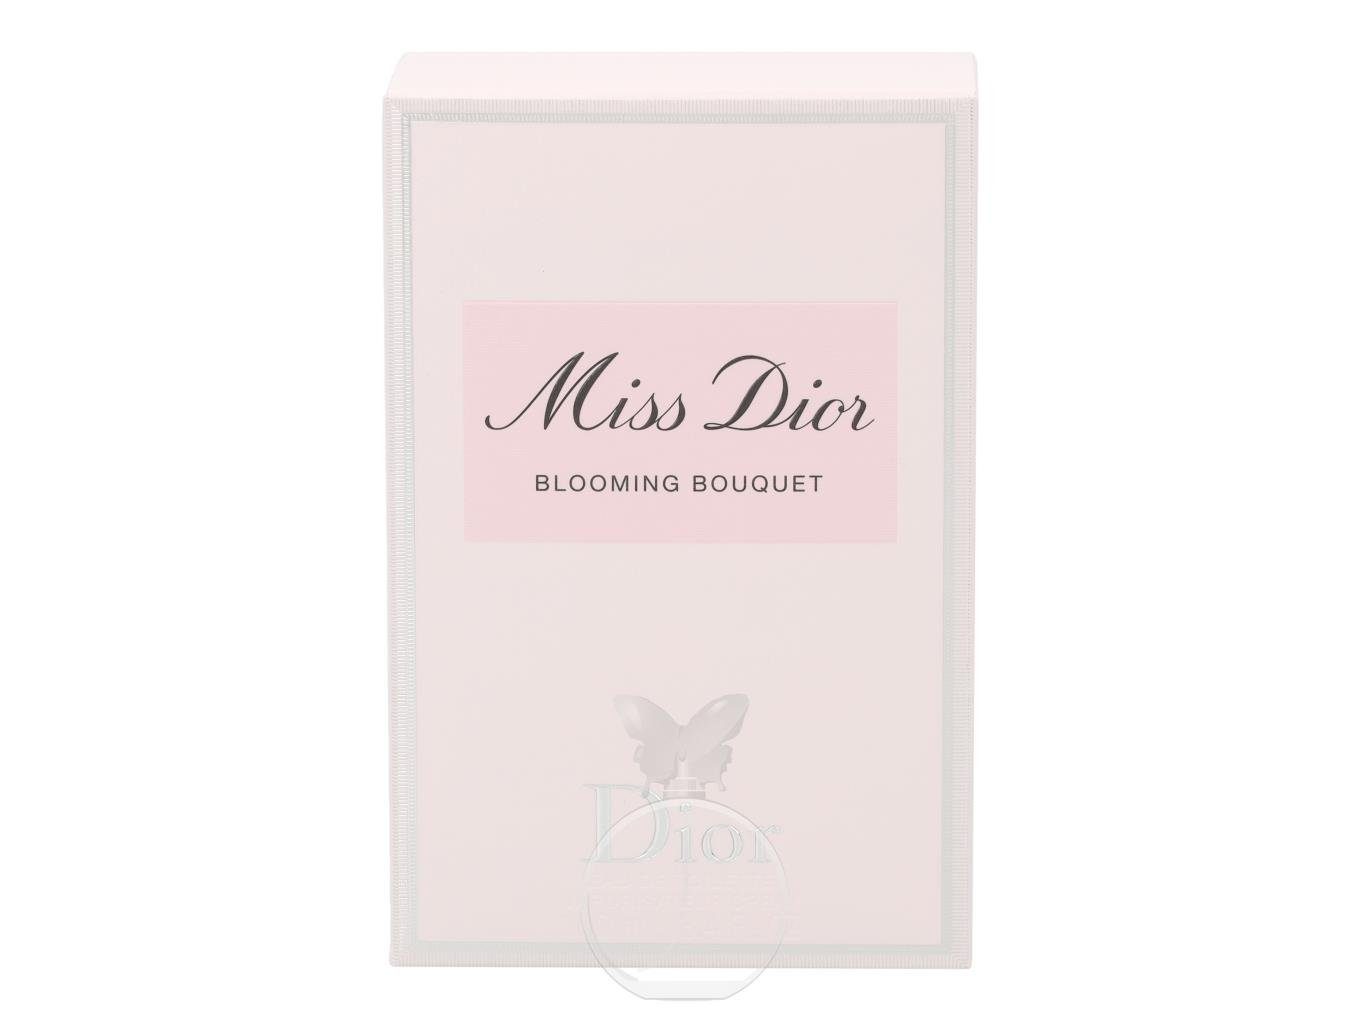 Dior Eau de de Eau Toilette Dior Bouquet Miss Blooming Dior Toilette